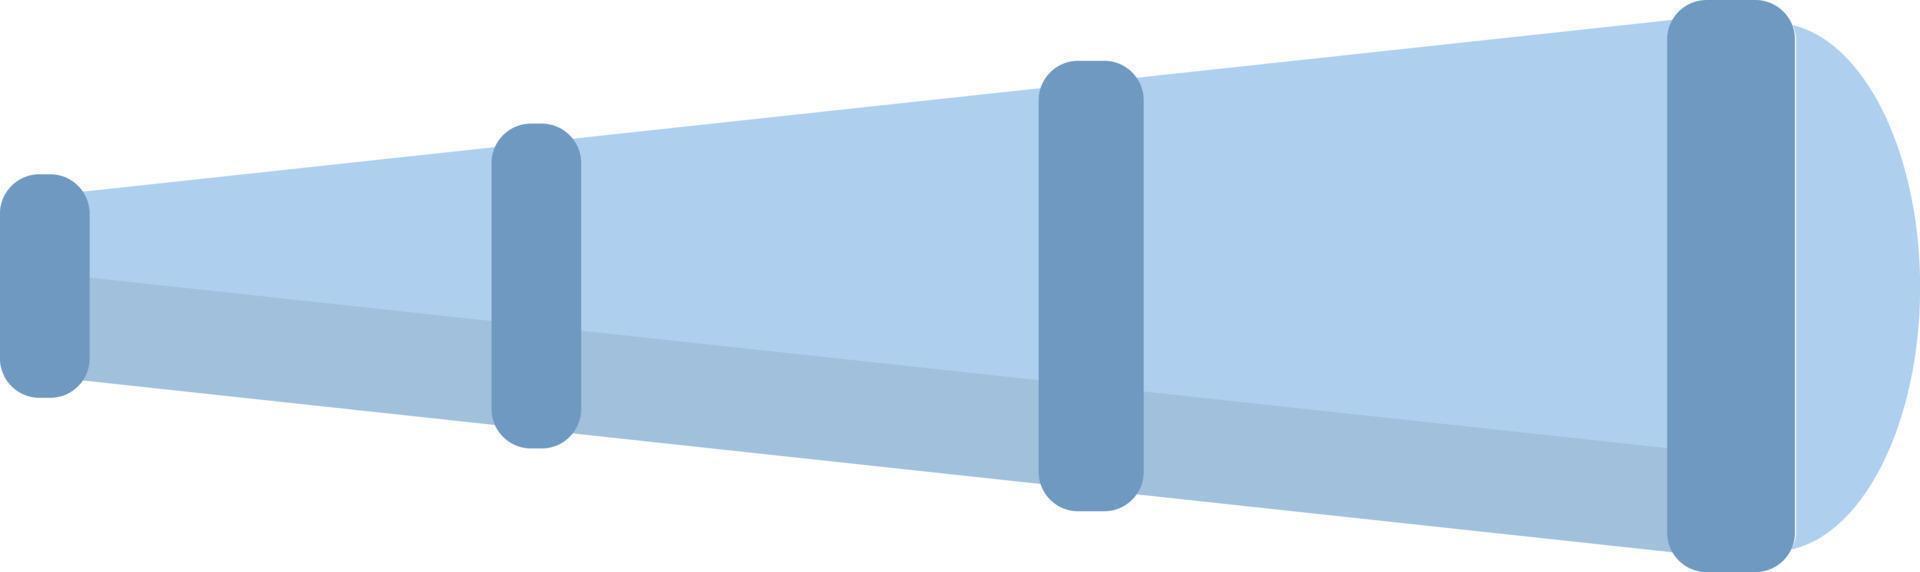 Télescope bleu, illustration, vecteur sur fond blanc.